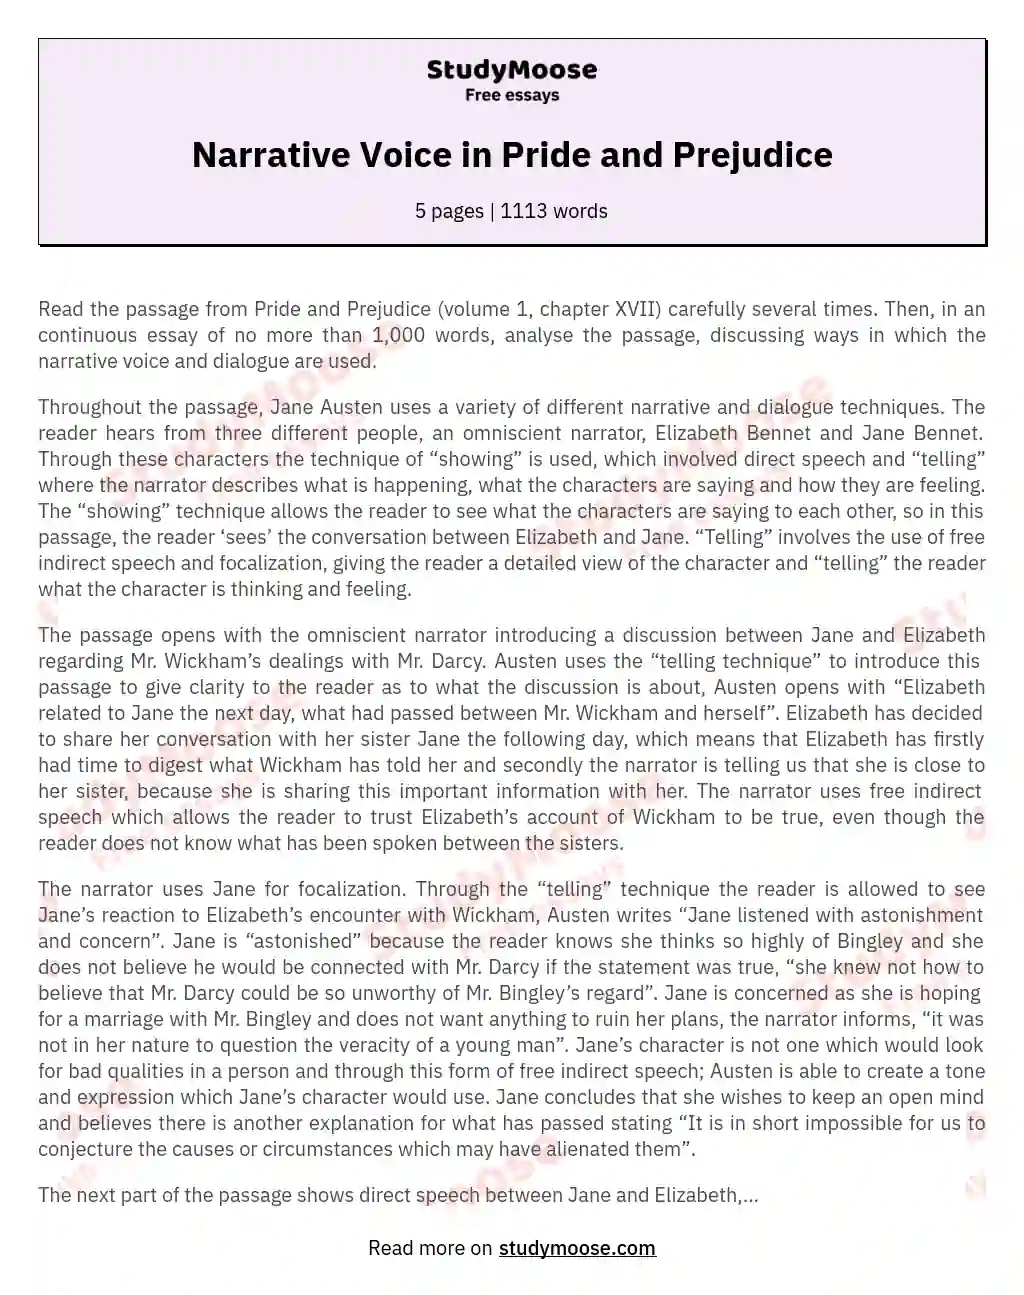 Narrative Voice in Pride and Prejudice